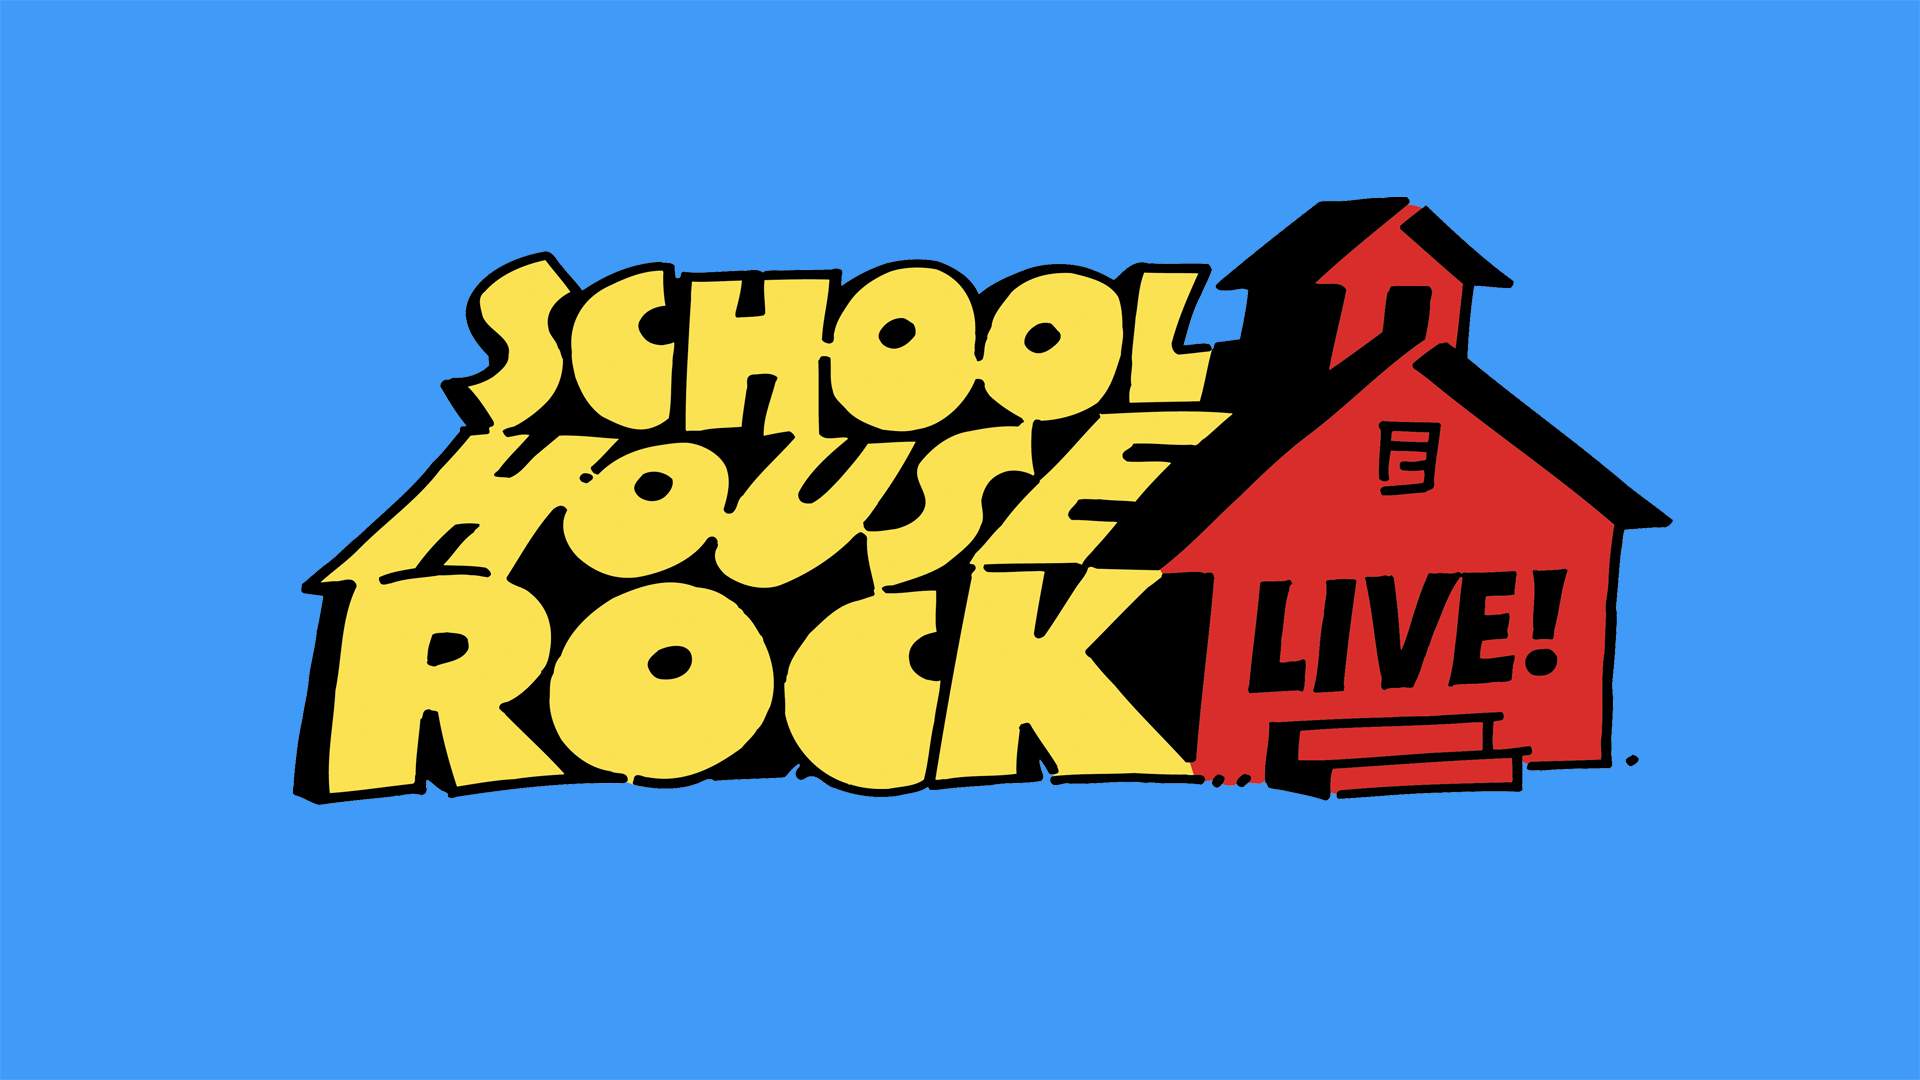 School House Rock Landscape copy.png